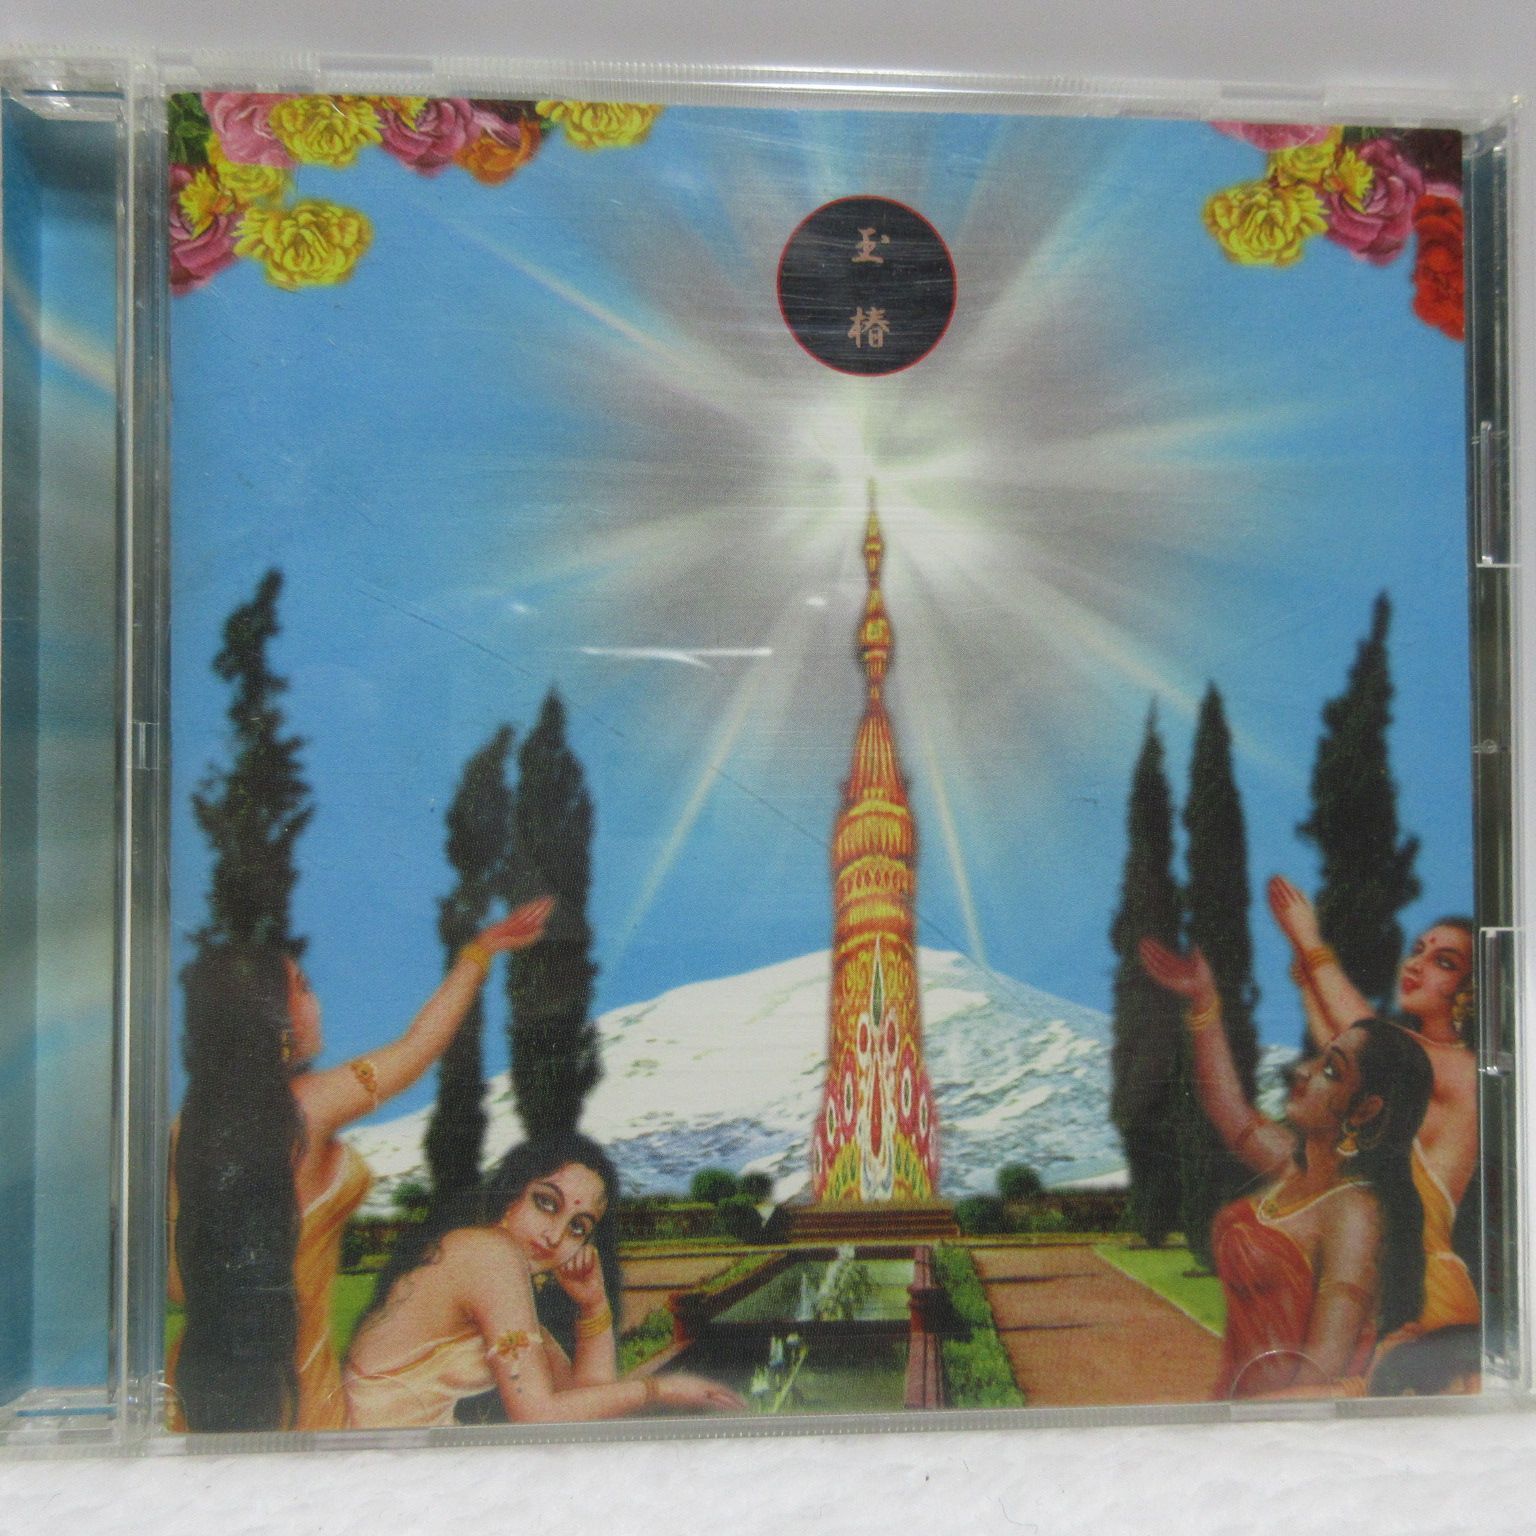 Vanilla / 玉椿 [CD]